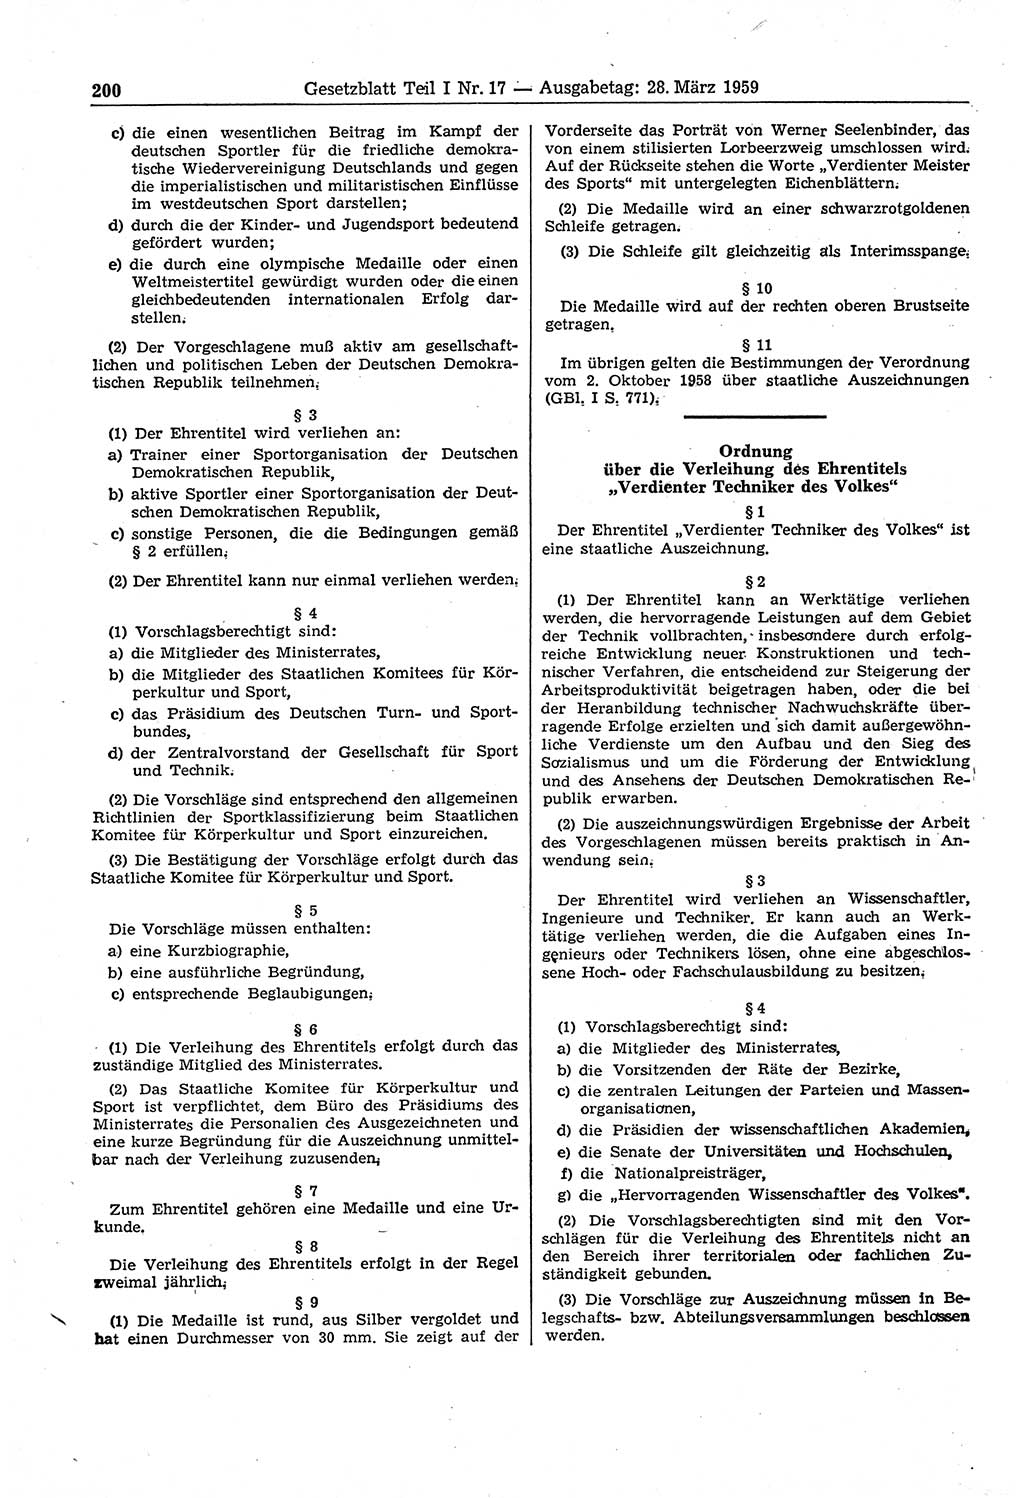 Gesetzblatt (GBl.) der Deutschen Demokratischen Republik (DDR) Teil Ⅰ 1959, Seite 200 (GBl. DDR Ⅰ 1959, S. 200)